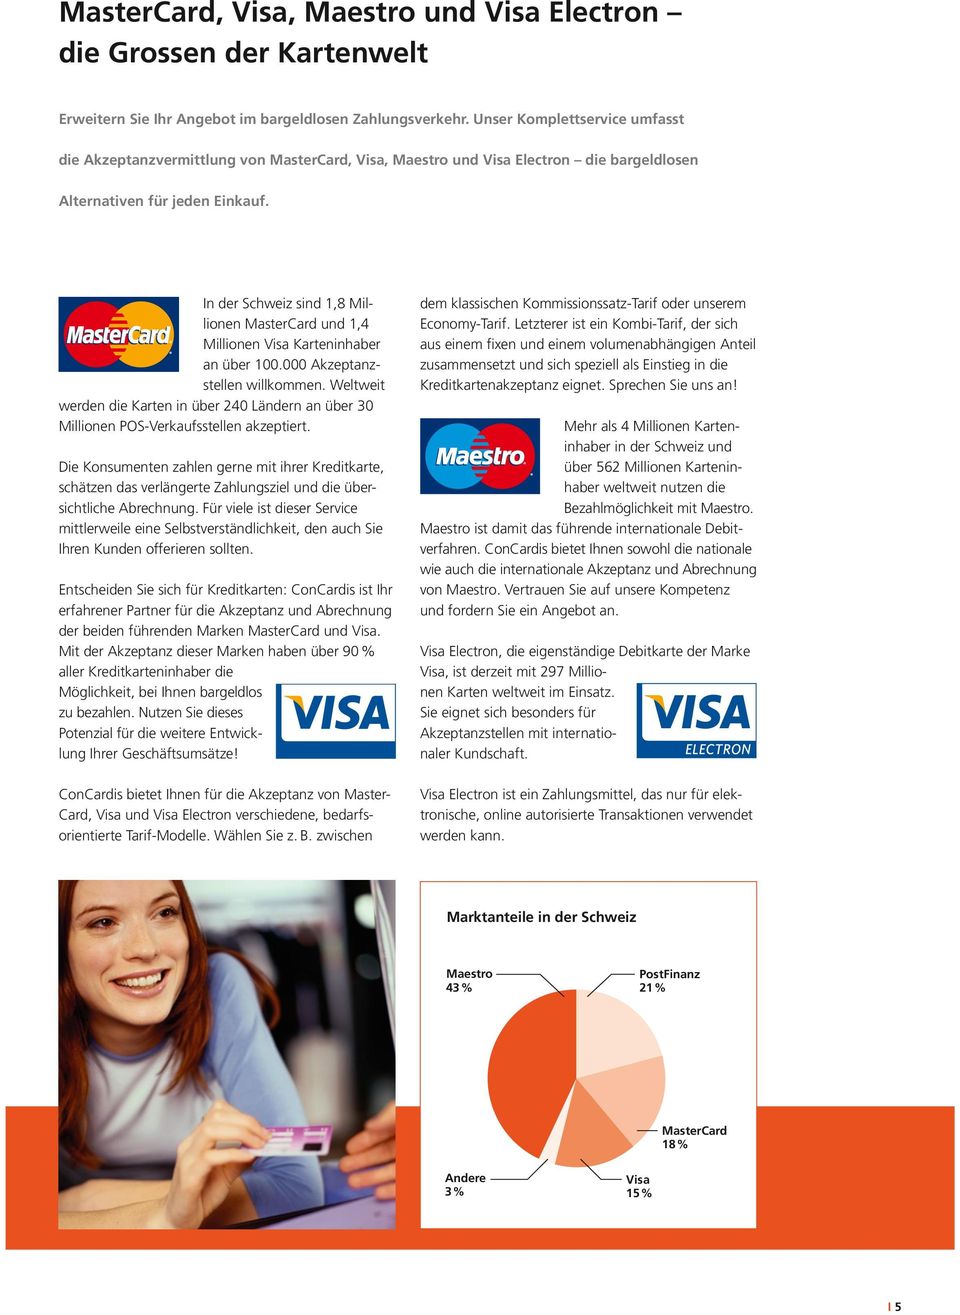 In der Schweiz sind 1,8 Millionen MasterCard und 1,4 Millionen Visa Karteninhaber an über 100.000 Akzeptanzstellen willkommen.